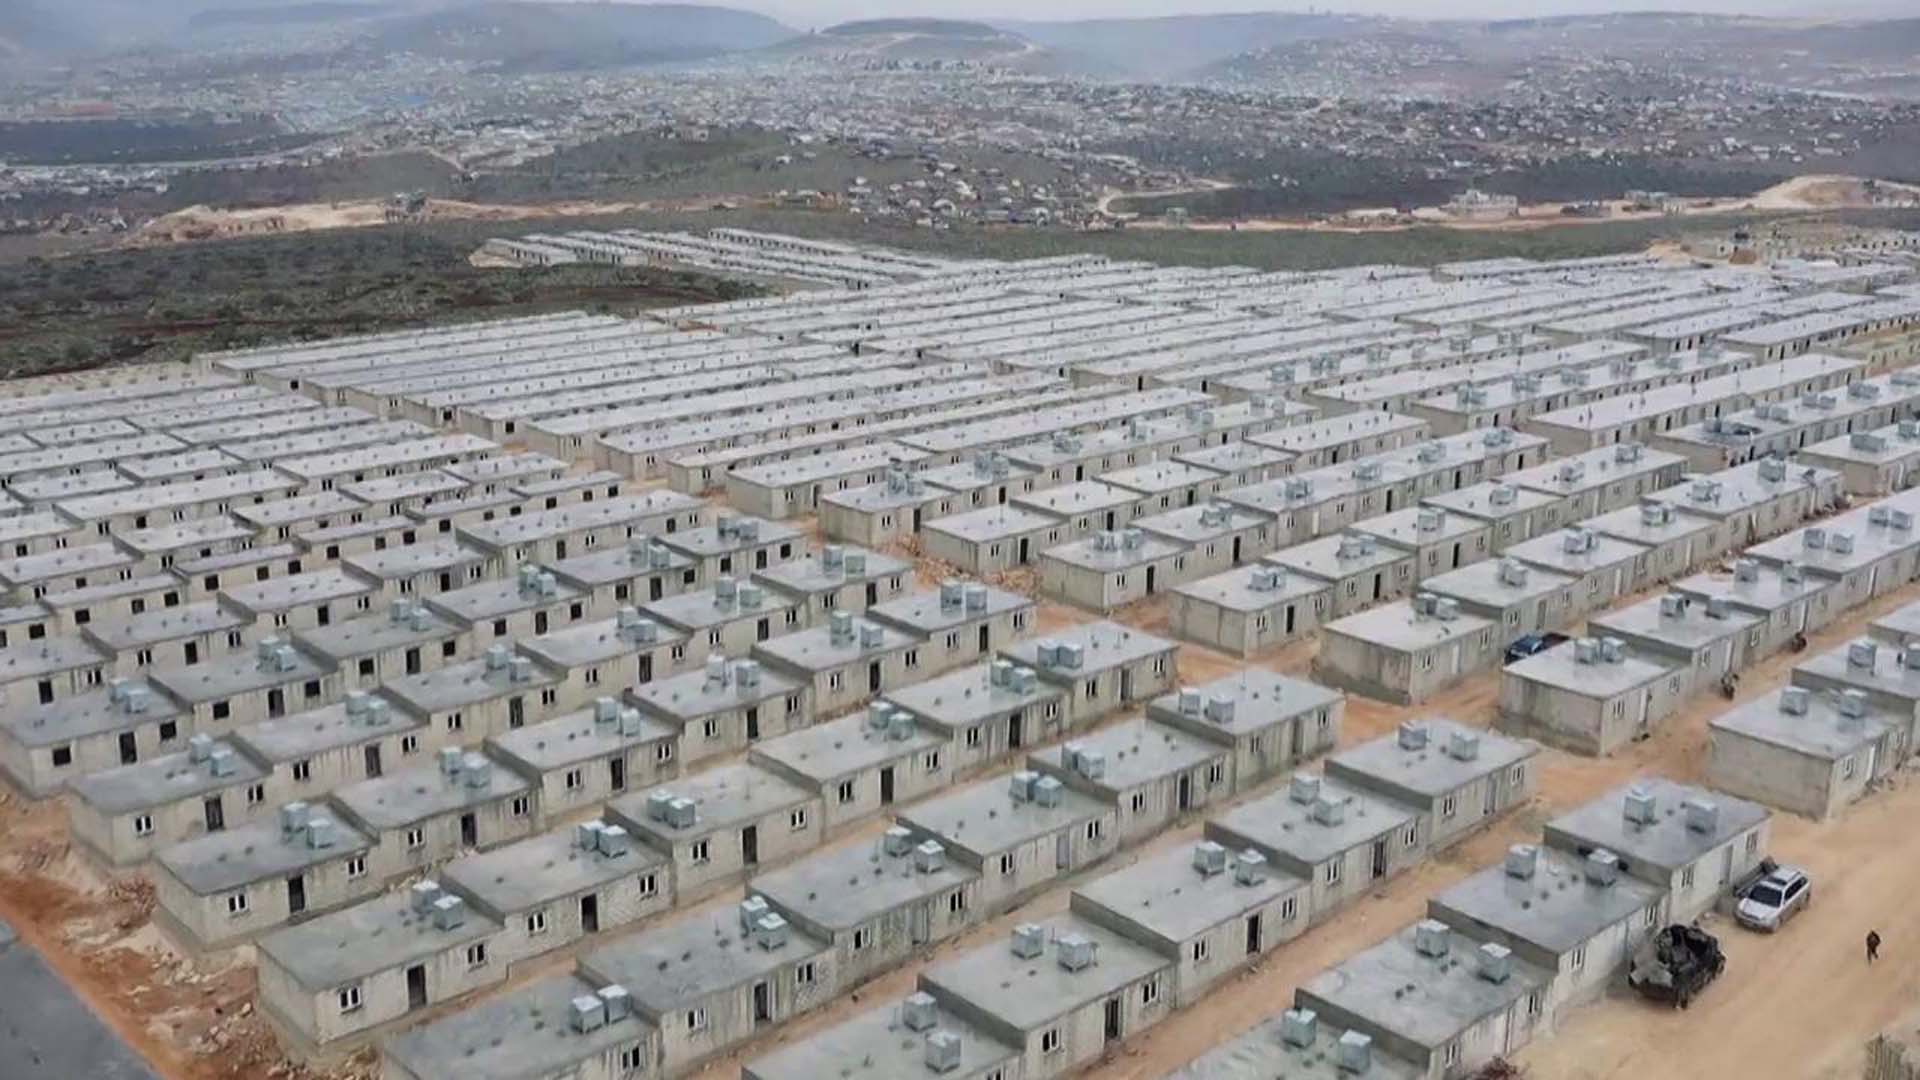 Suriyelilerin geri dönüşü için adımlar atıldı! Projeler hazırlandı, yardım kuruluşları devreye sokuldu! Yepyeni bir şehir inşa edilecek 